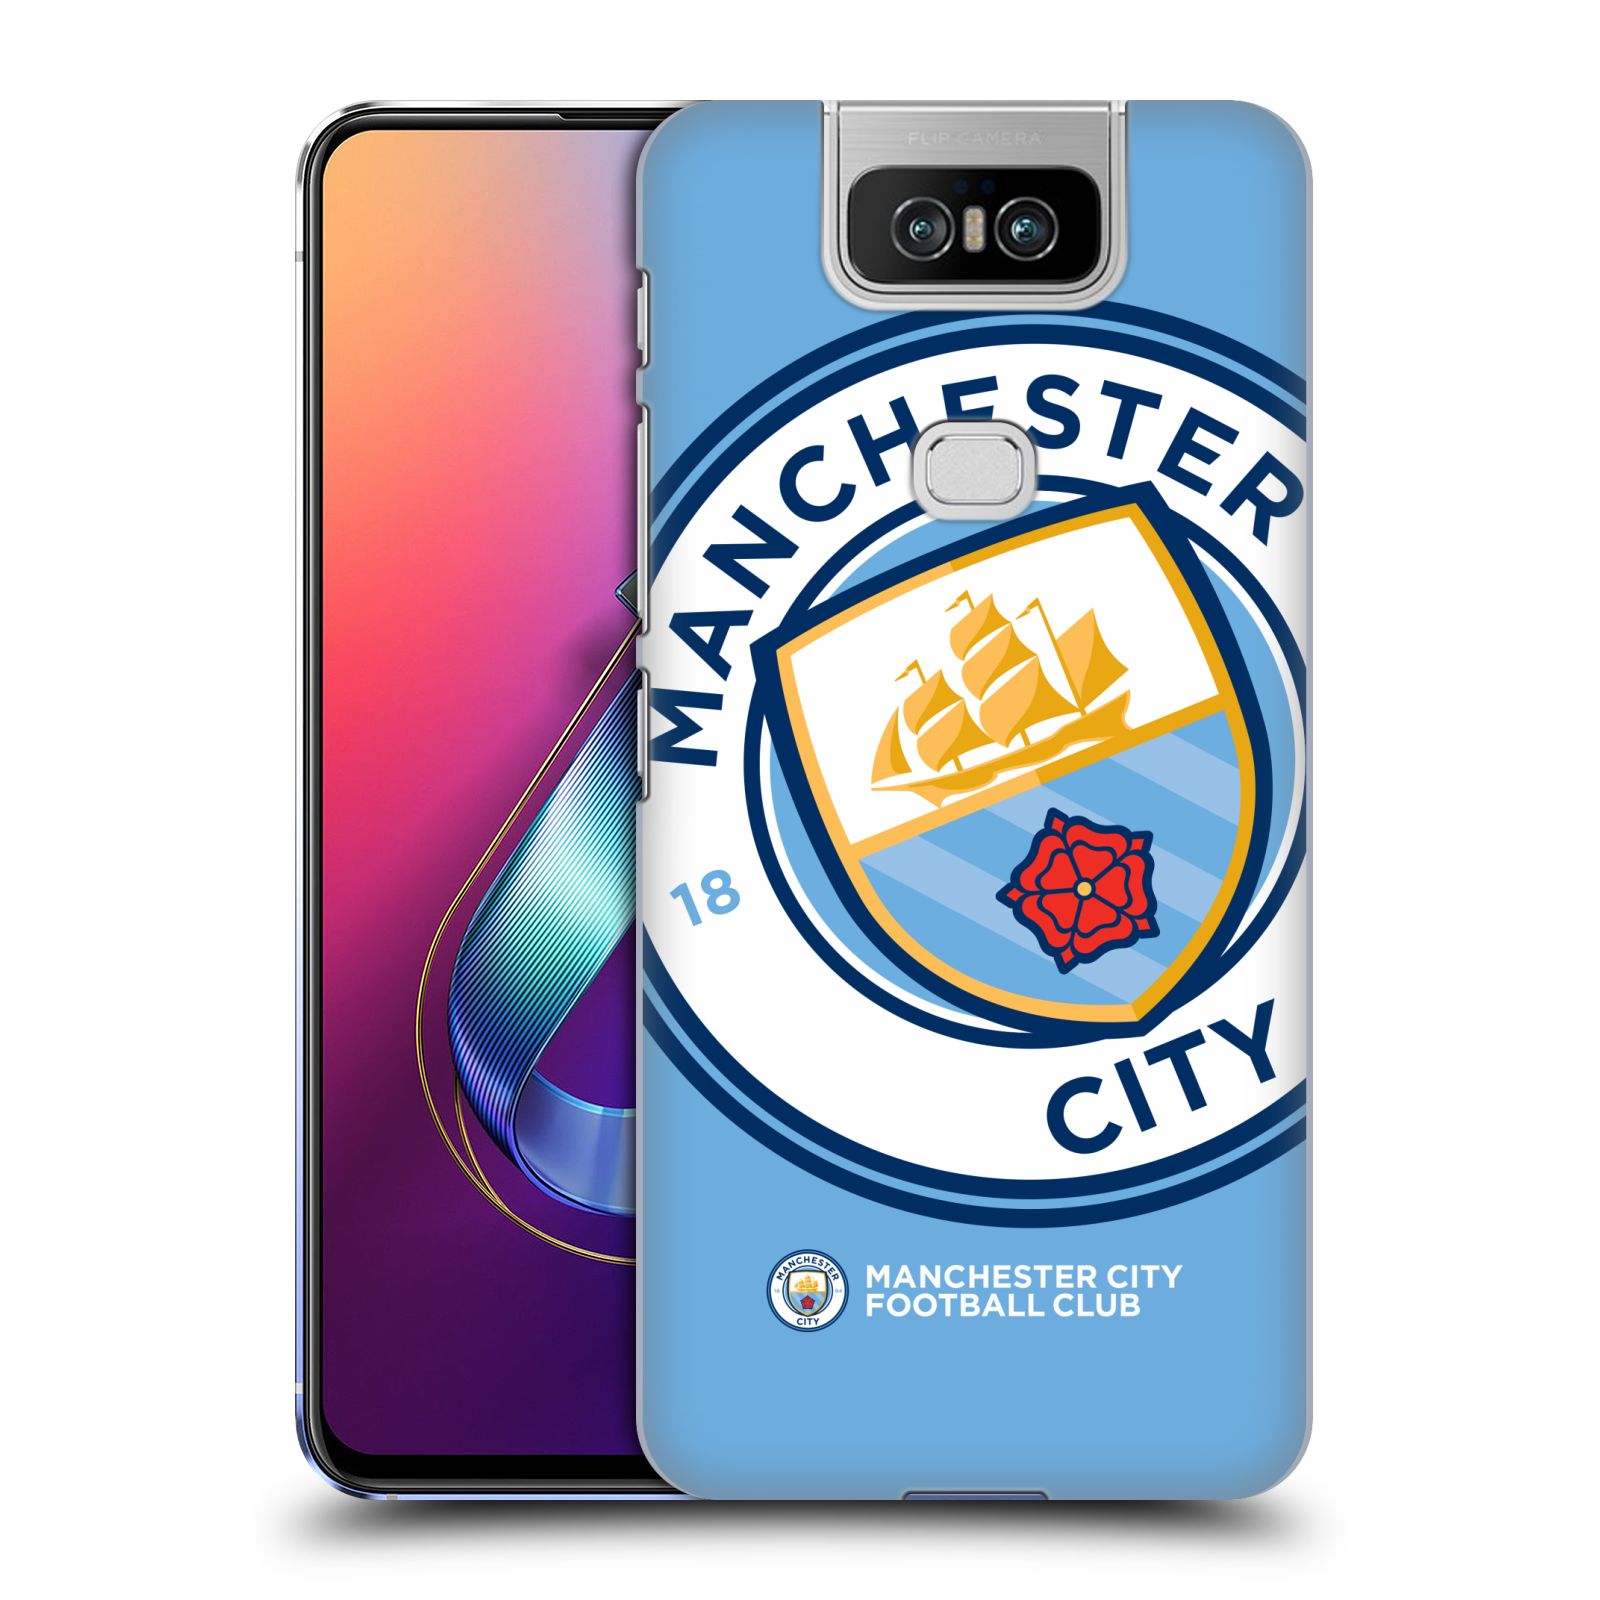 Pouzdro na mobil Asus Zenfone 6 ZS630KL - HEAD CASE - Fotbalový klub Manchester City modrý velký přesahující znak